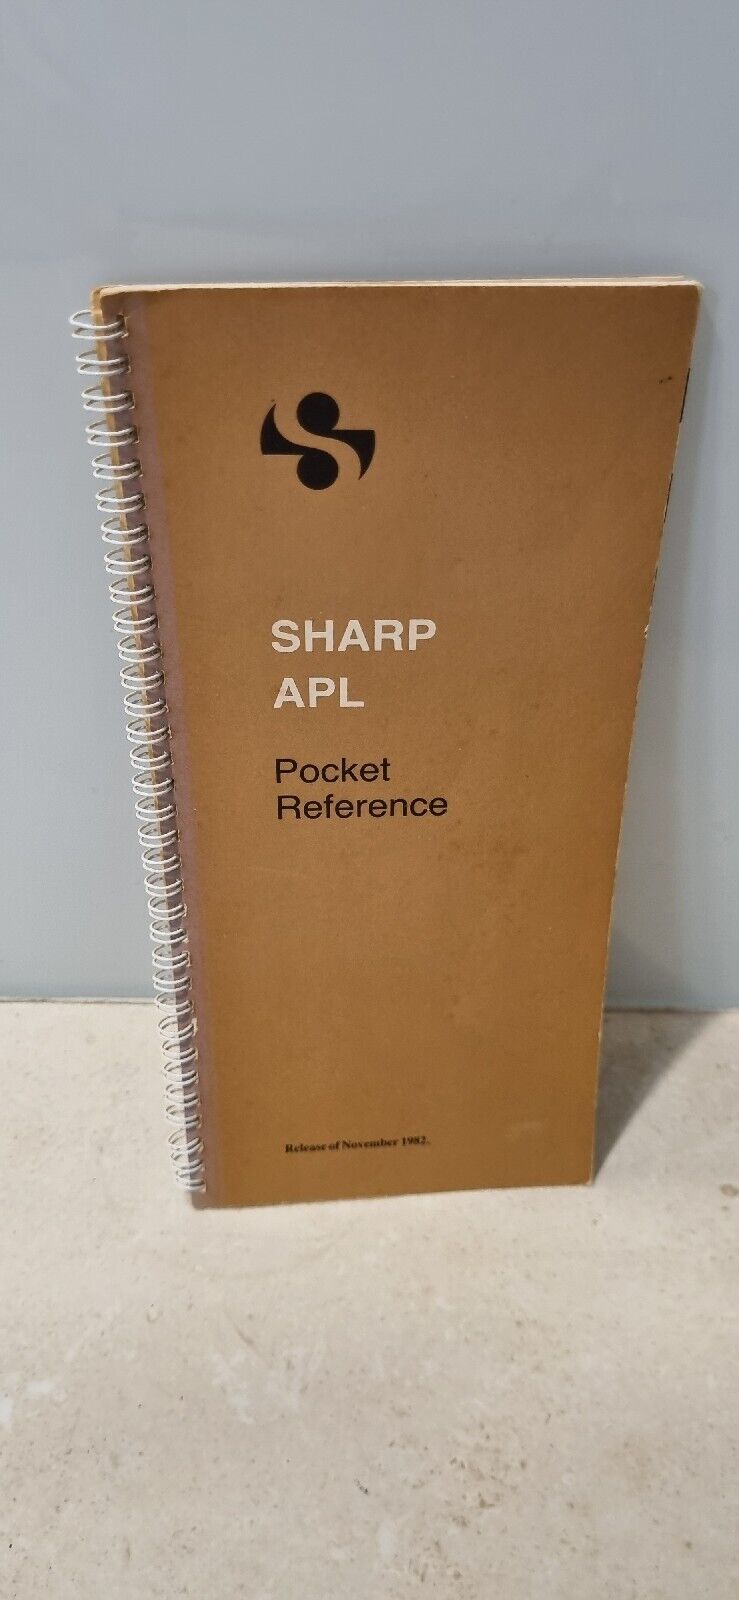 Sharp APL Pocket Reference Manual Vintage Book